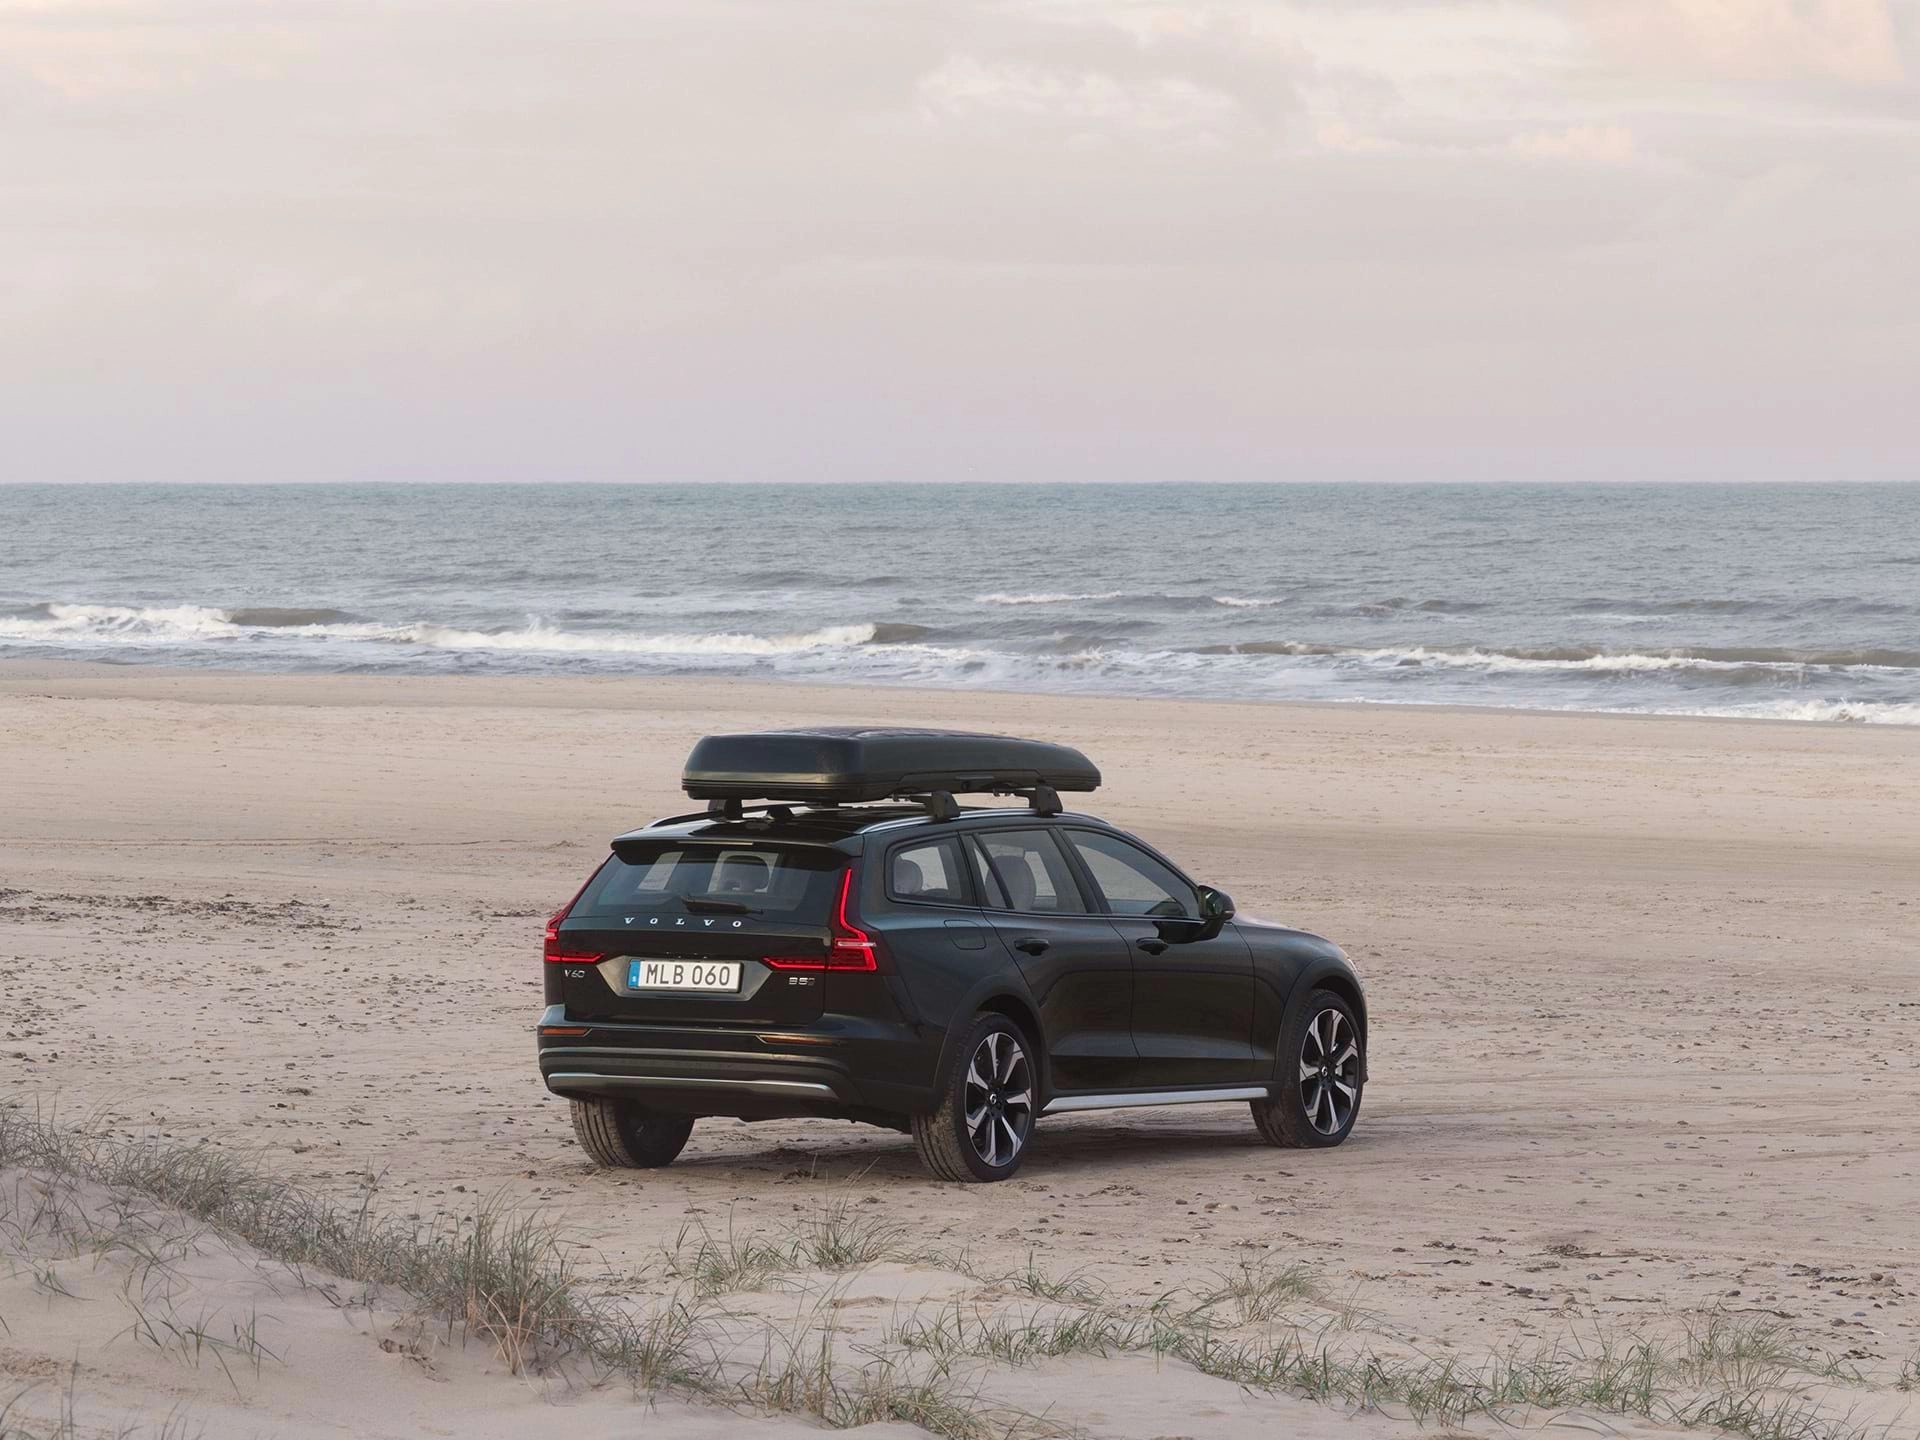 Break Volvo équipé d'un coffre de toit garé sur une plage de sable.